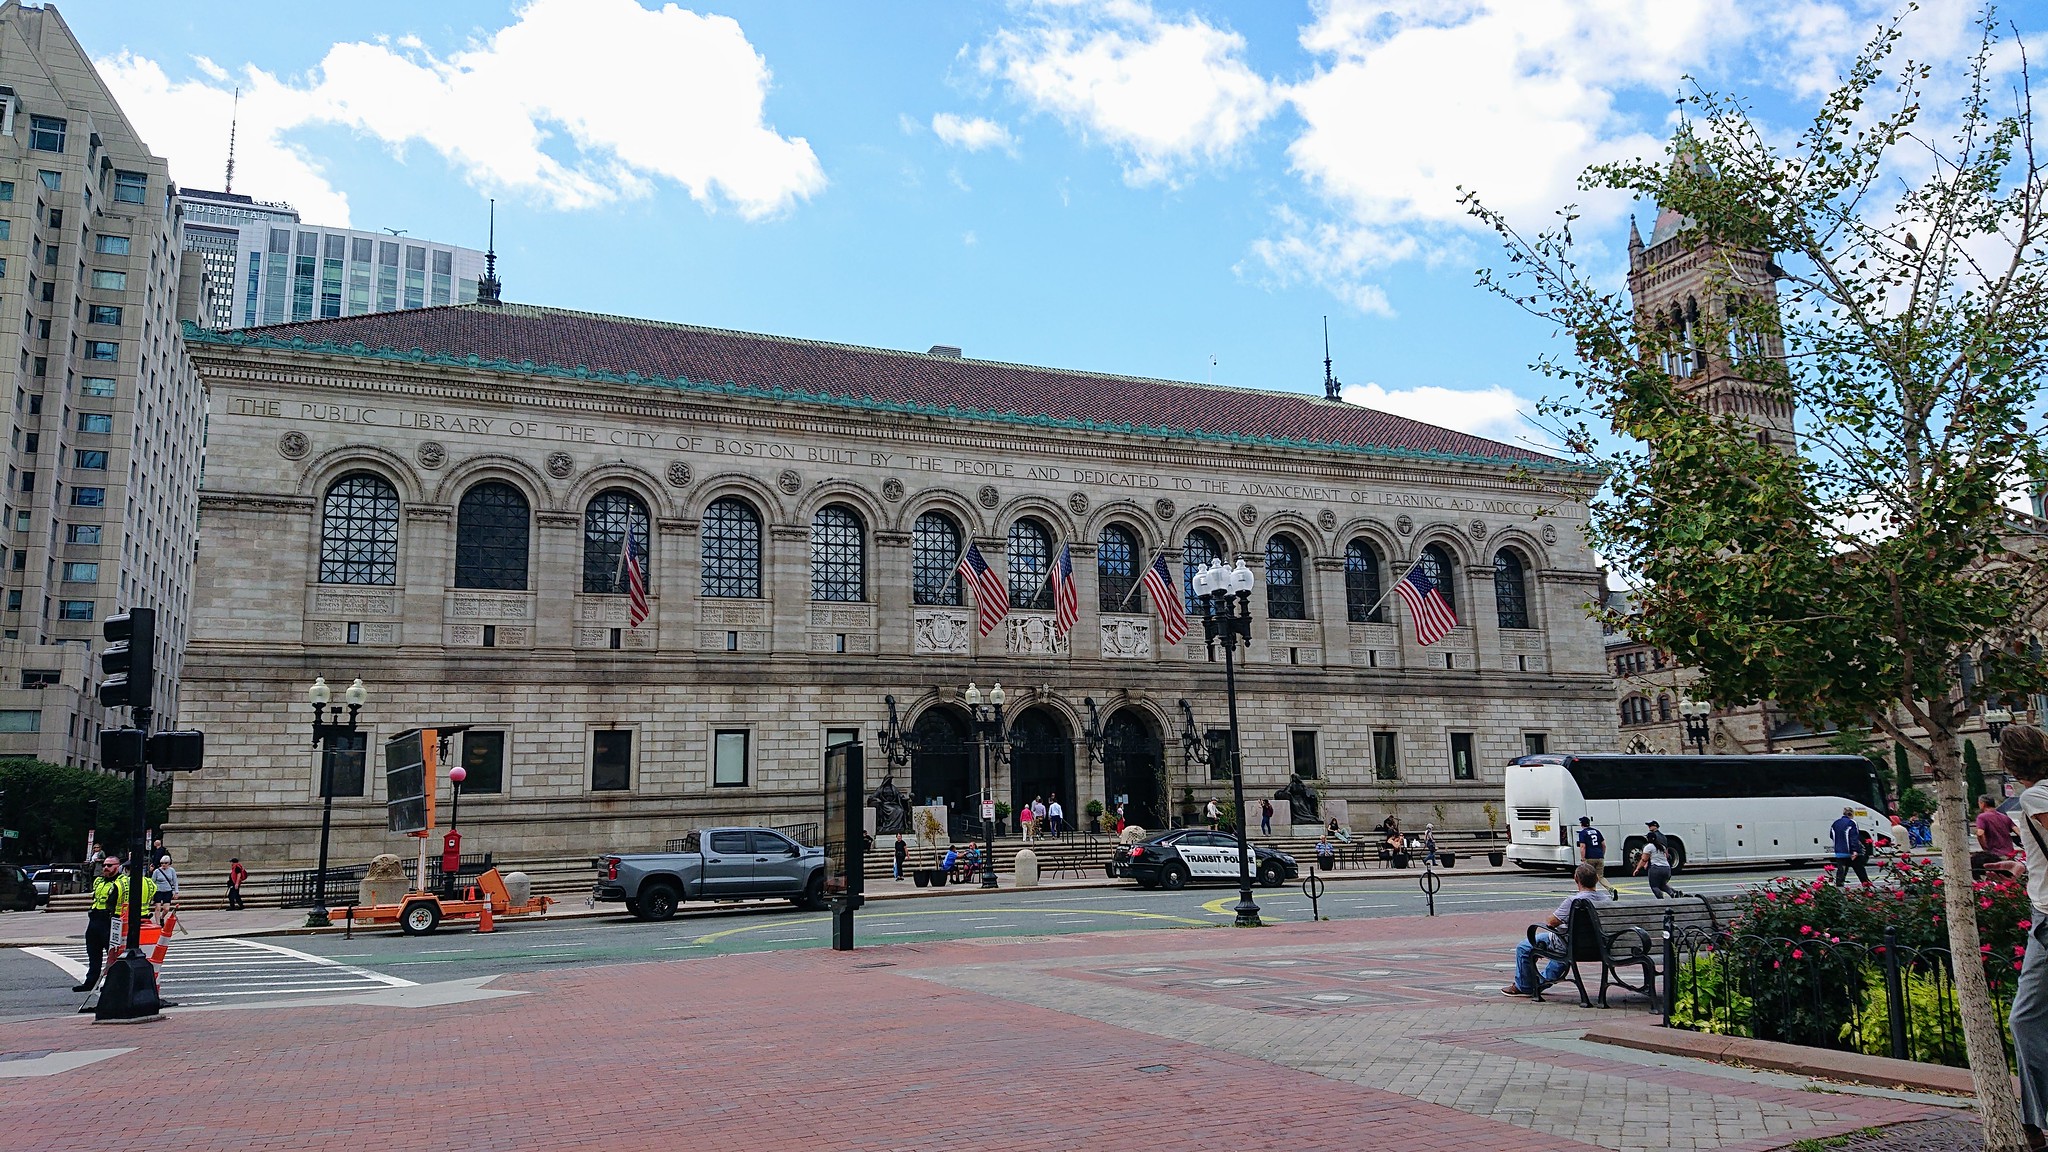 Public Library - Boston, MA